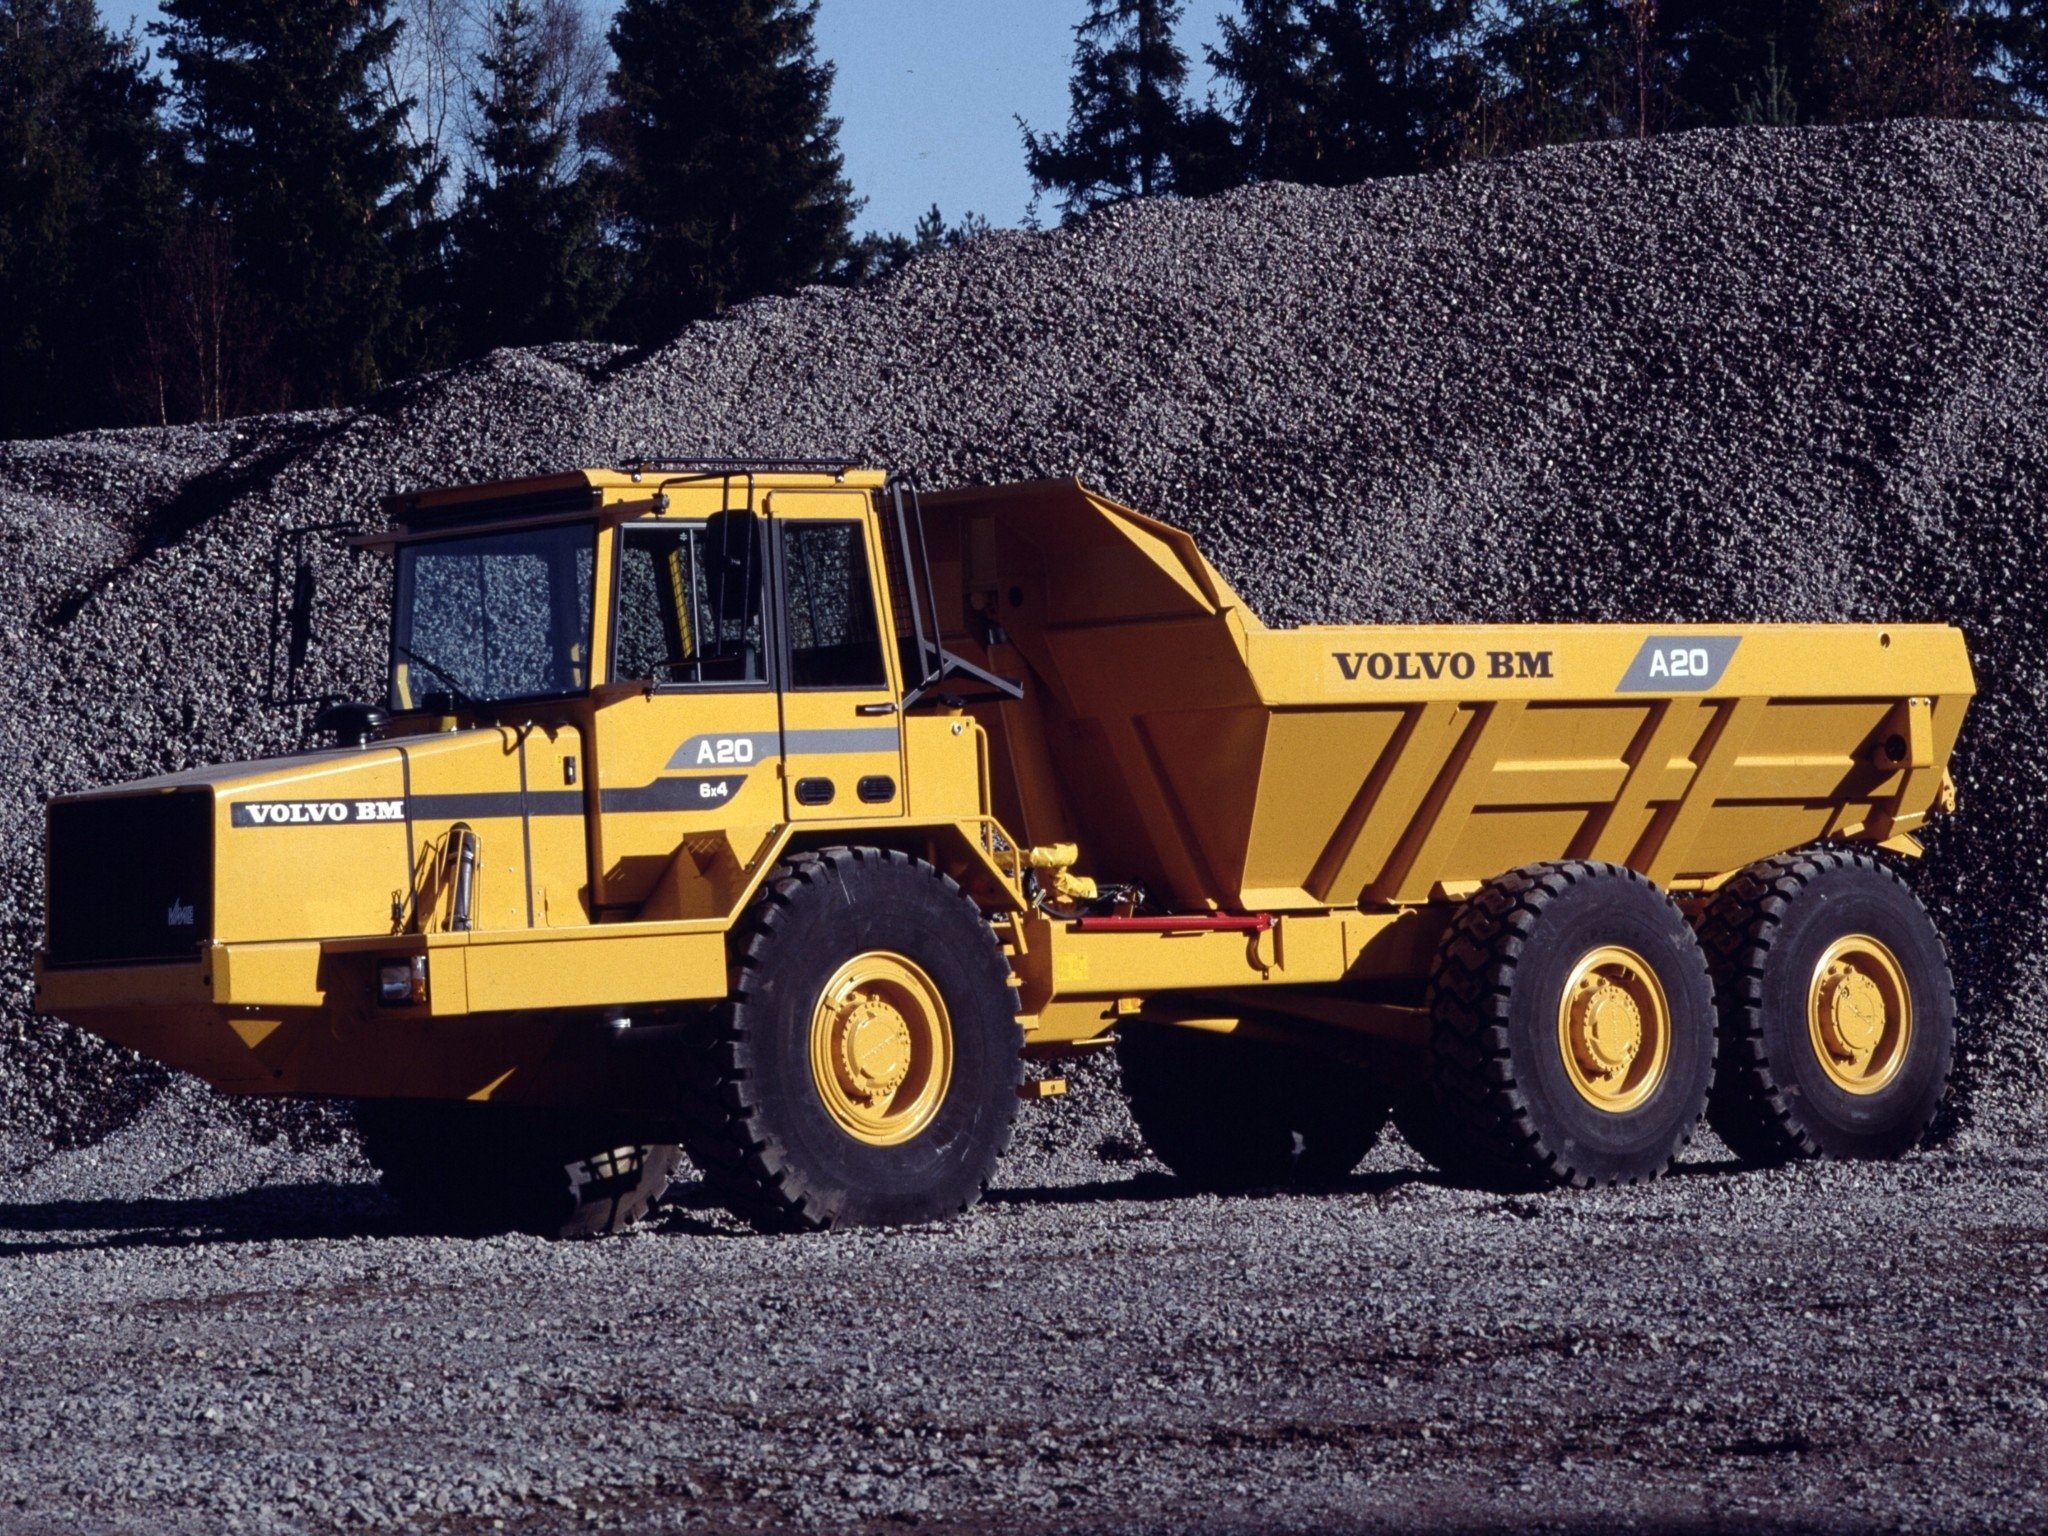 1986, Volvo, Model bm, A20, Quarry, Construction, Semi, Tractor Wallpaper